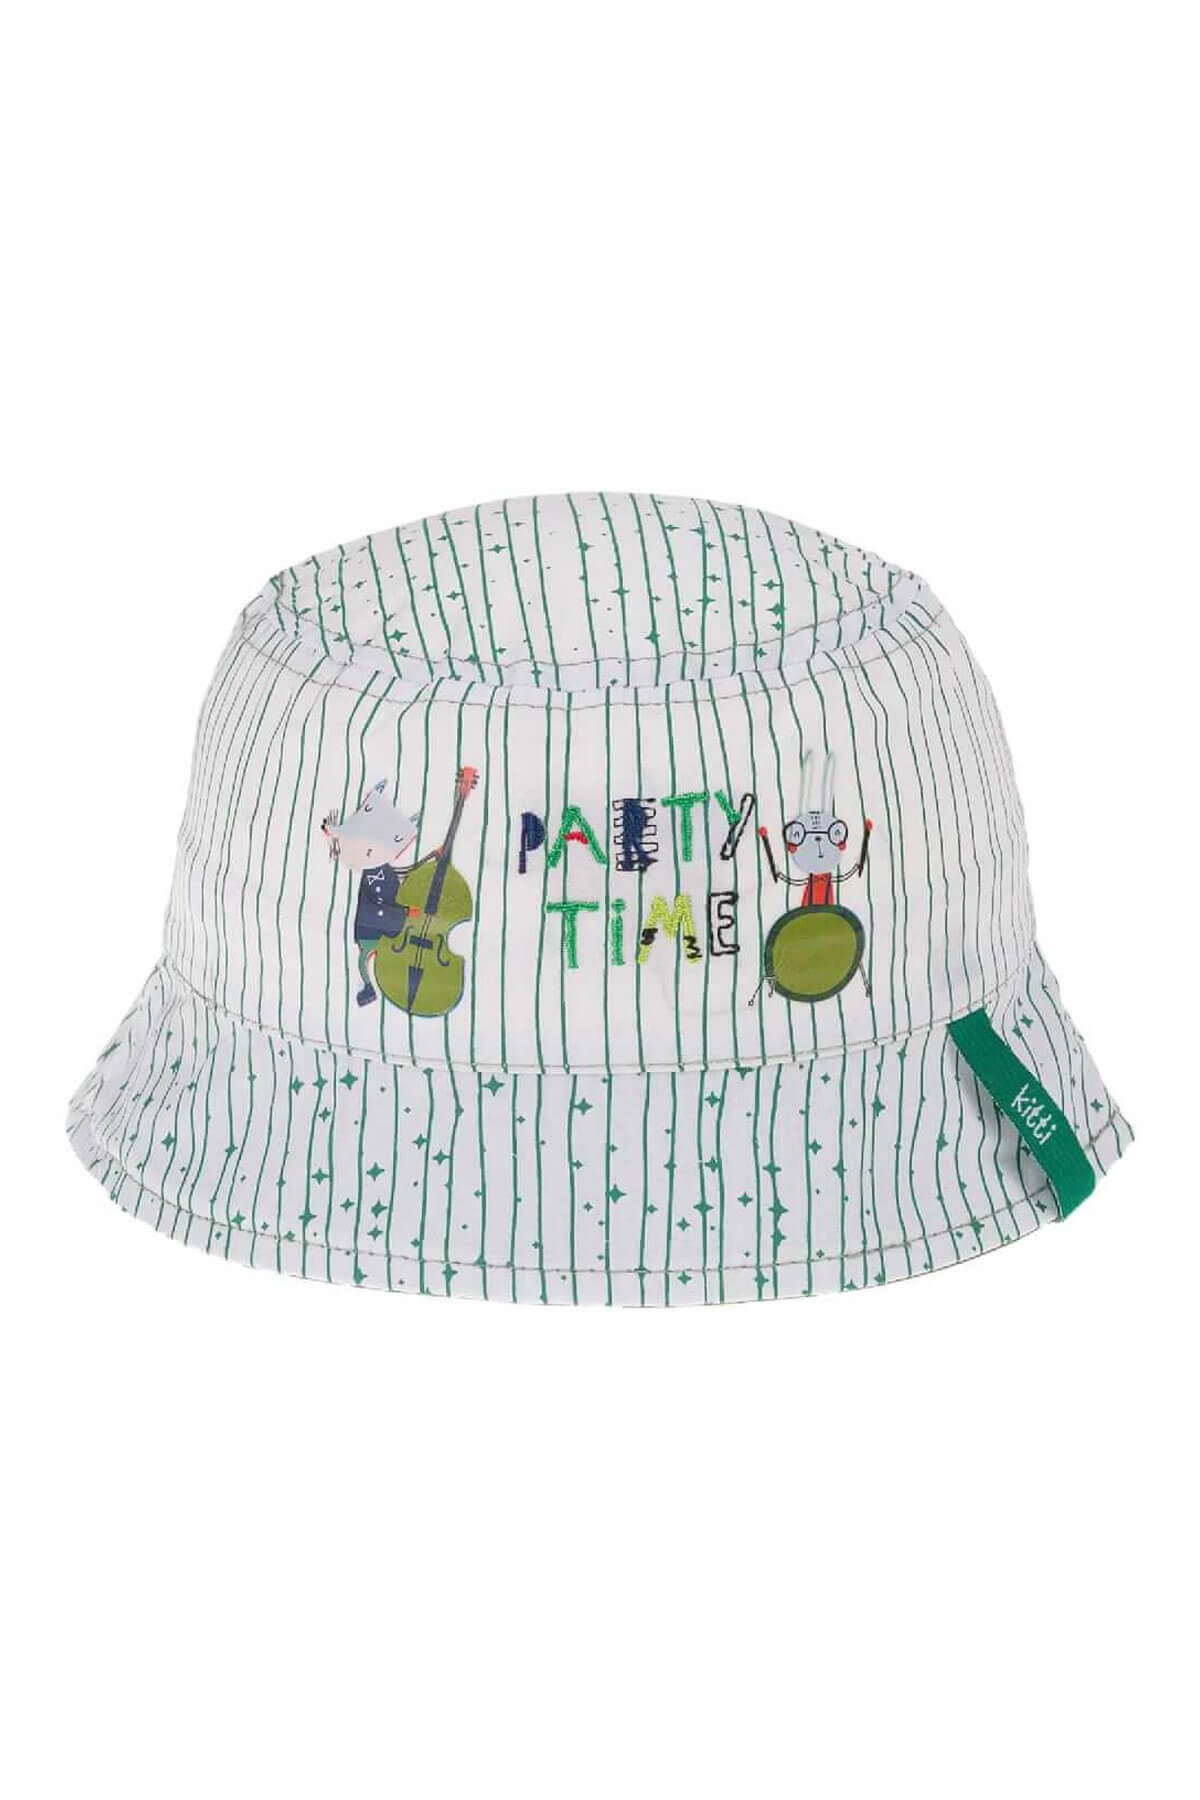 Kitti Erkek Bebek Fötr Şapka Yeşil Party Time